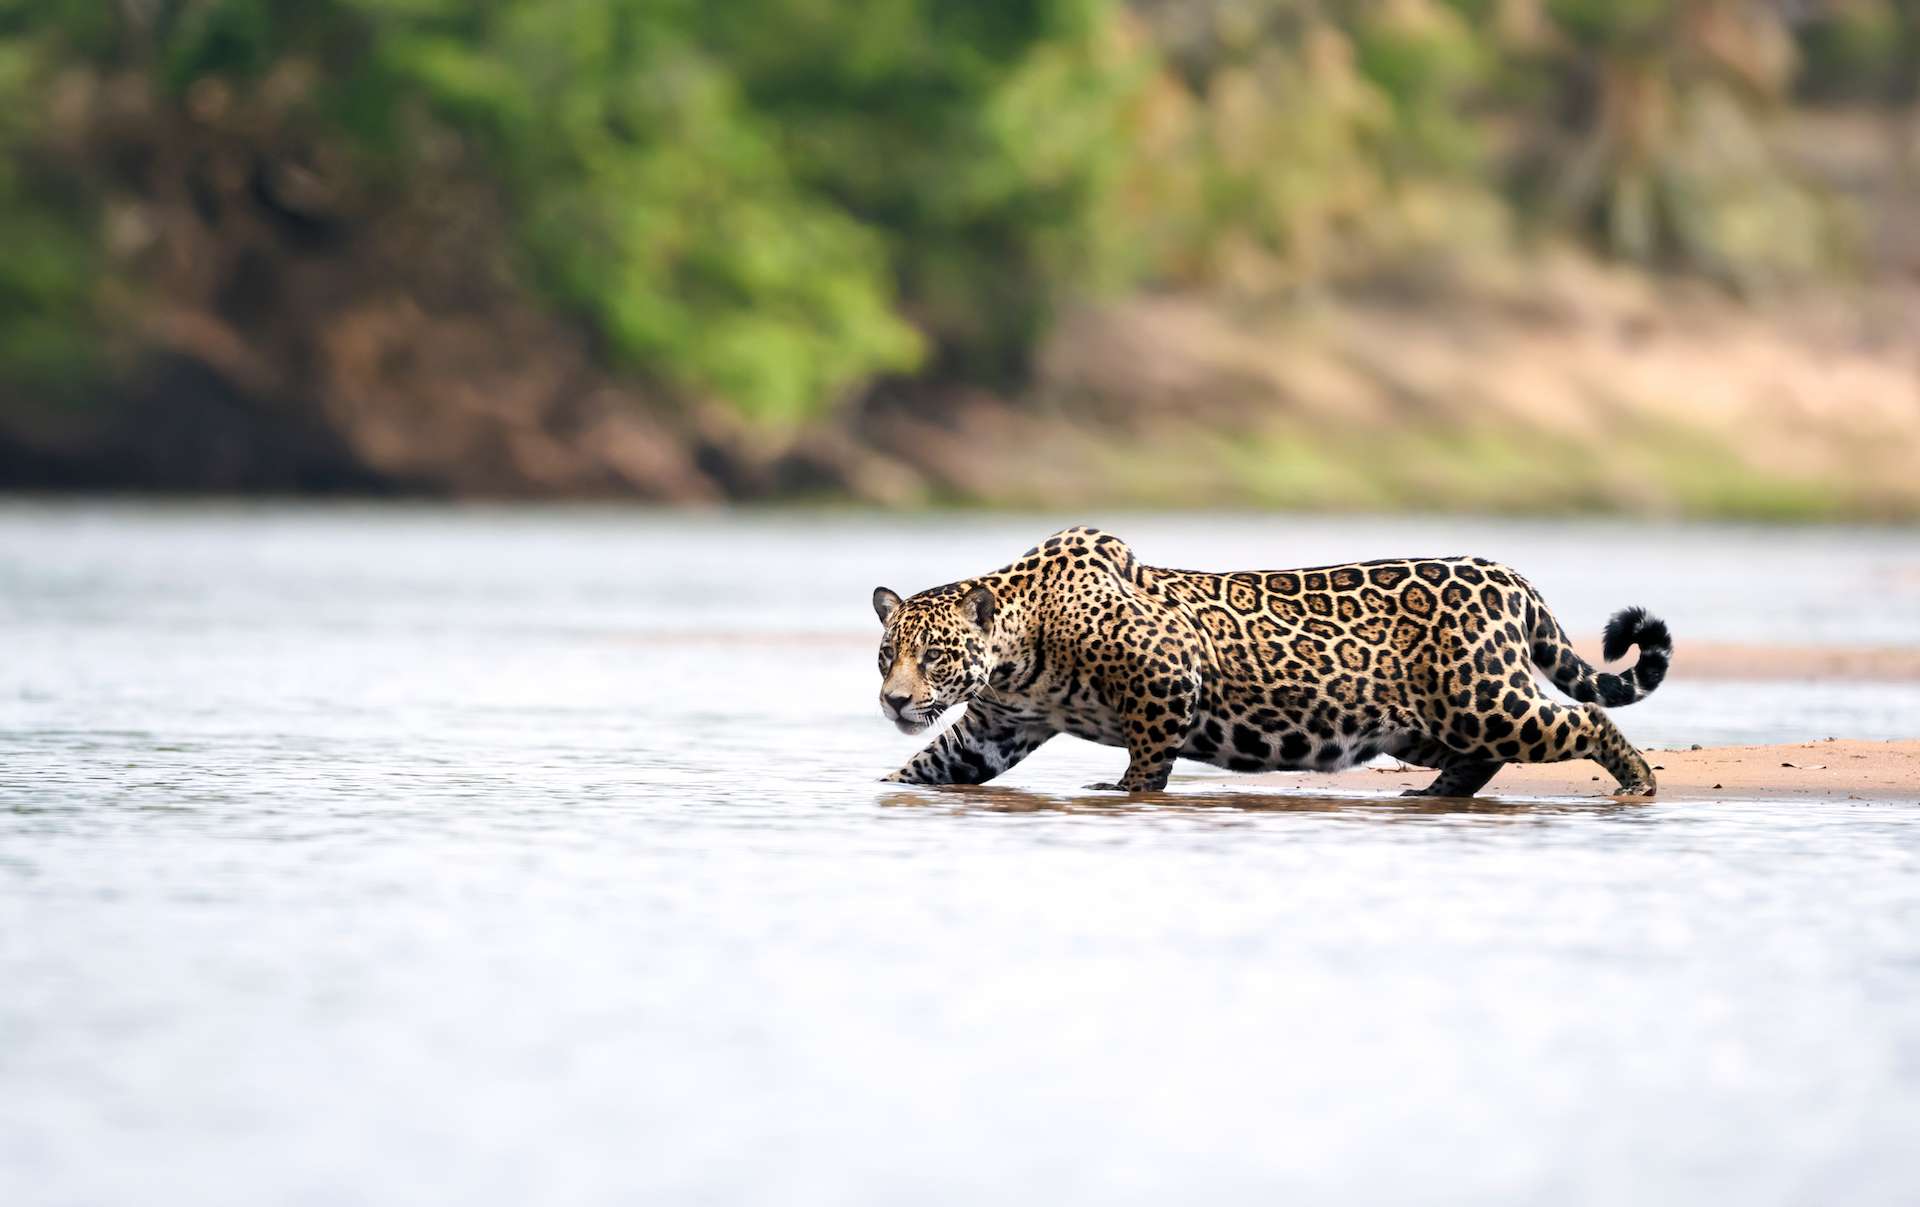 Close up of a Jaguar stalking prey in water, Pantanal, Brazil.